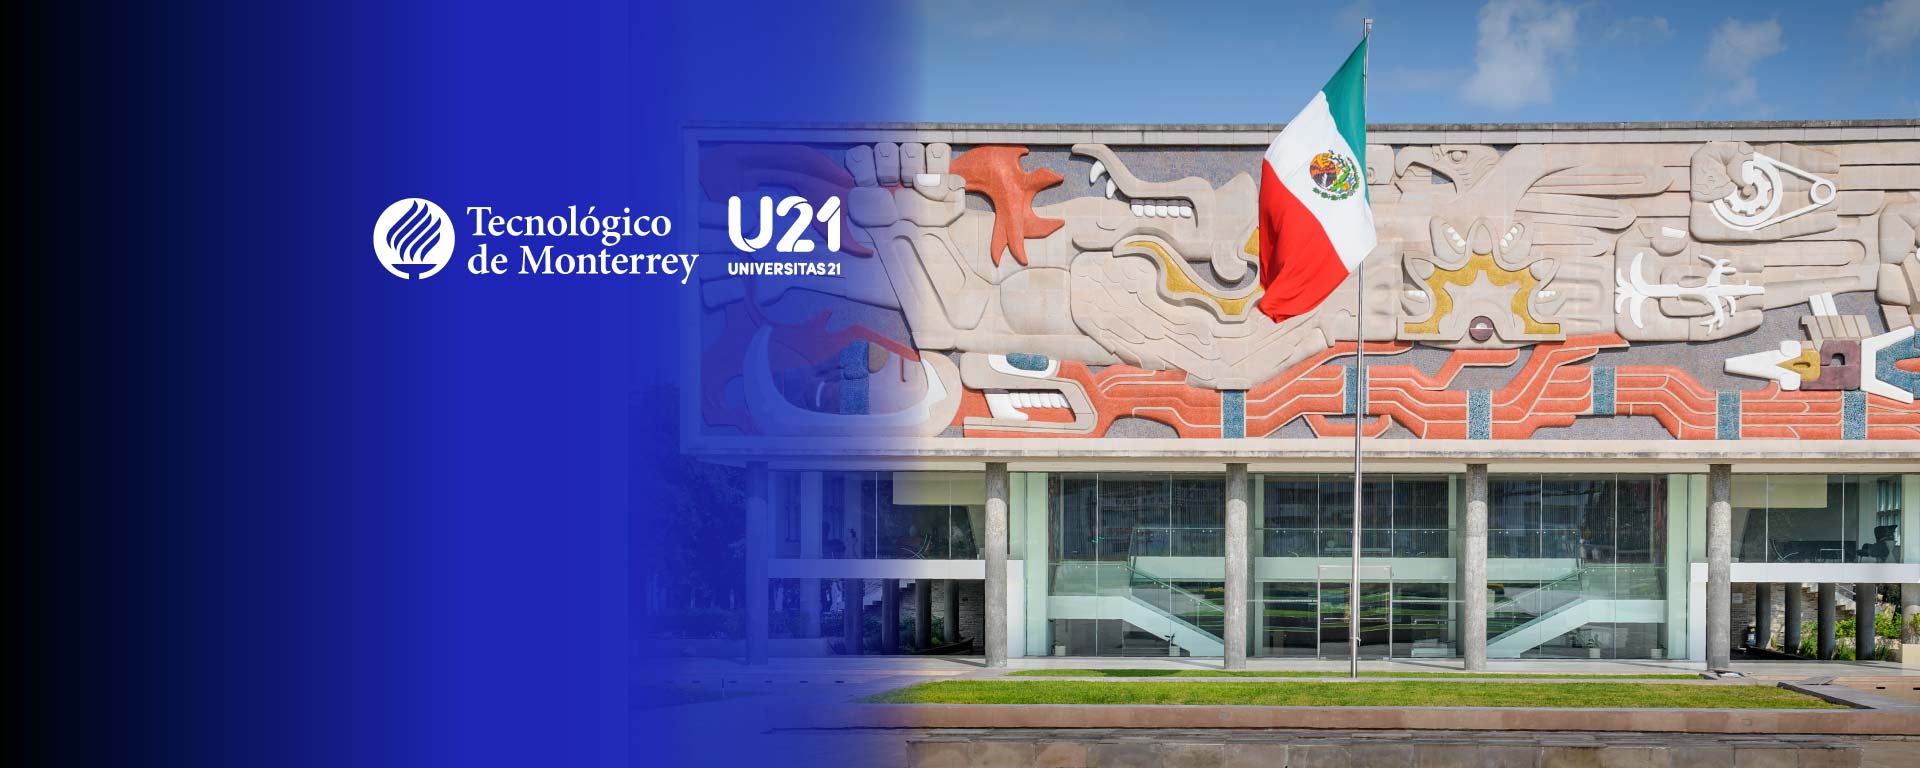 Rectoría con logotipos del Tec de Monterrey y U21 Universitas